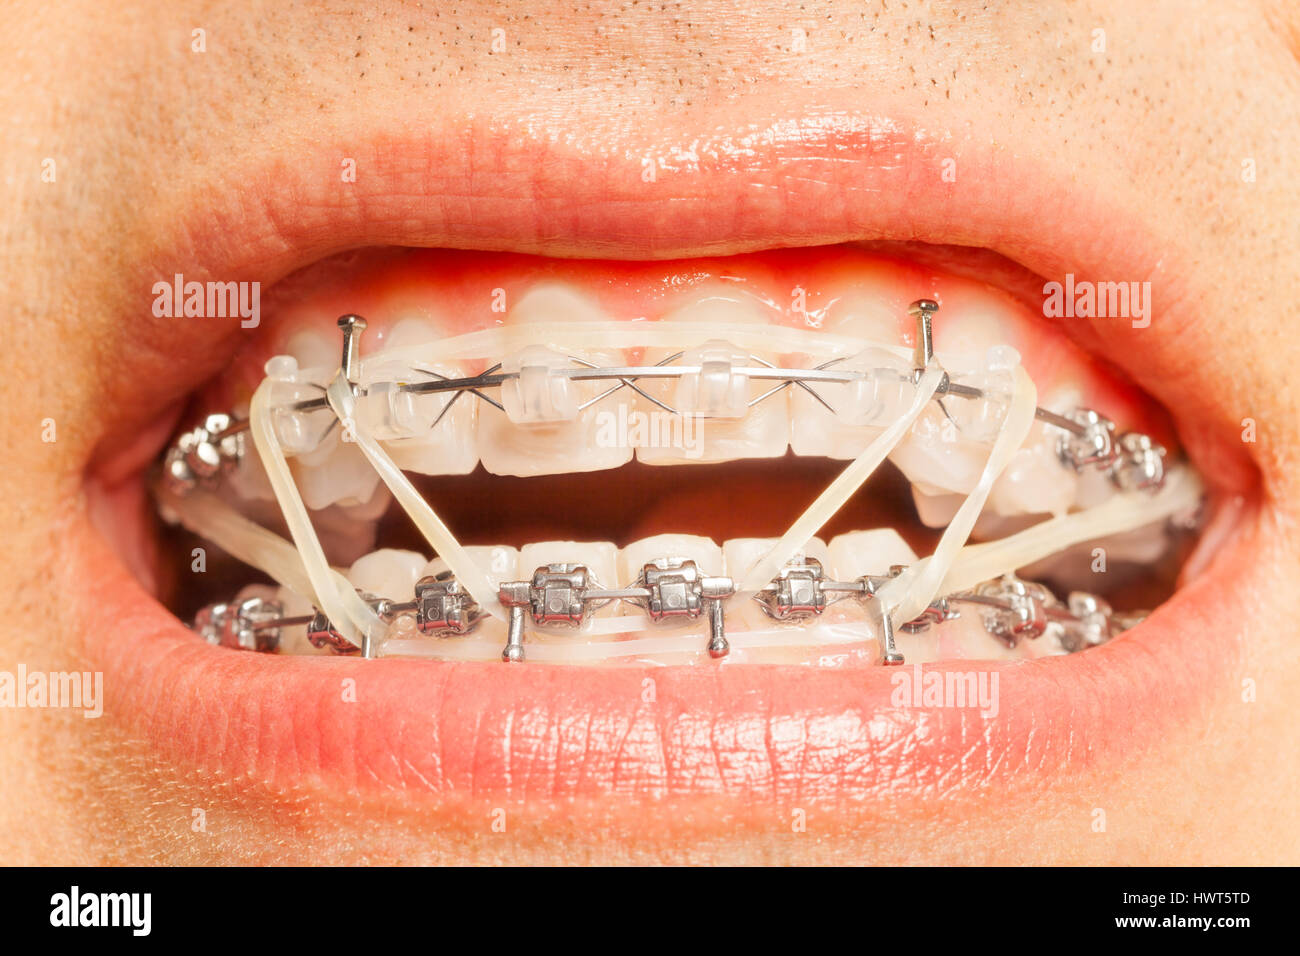 Appareil dentaire avec joints toriques sur la correction orthodontique Banque D'Images